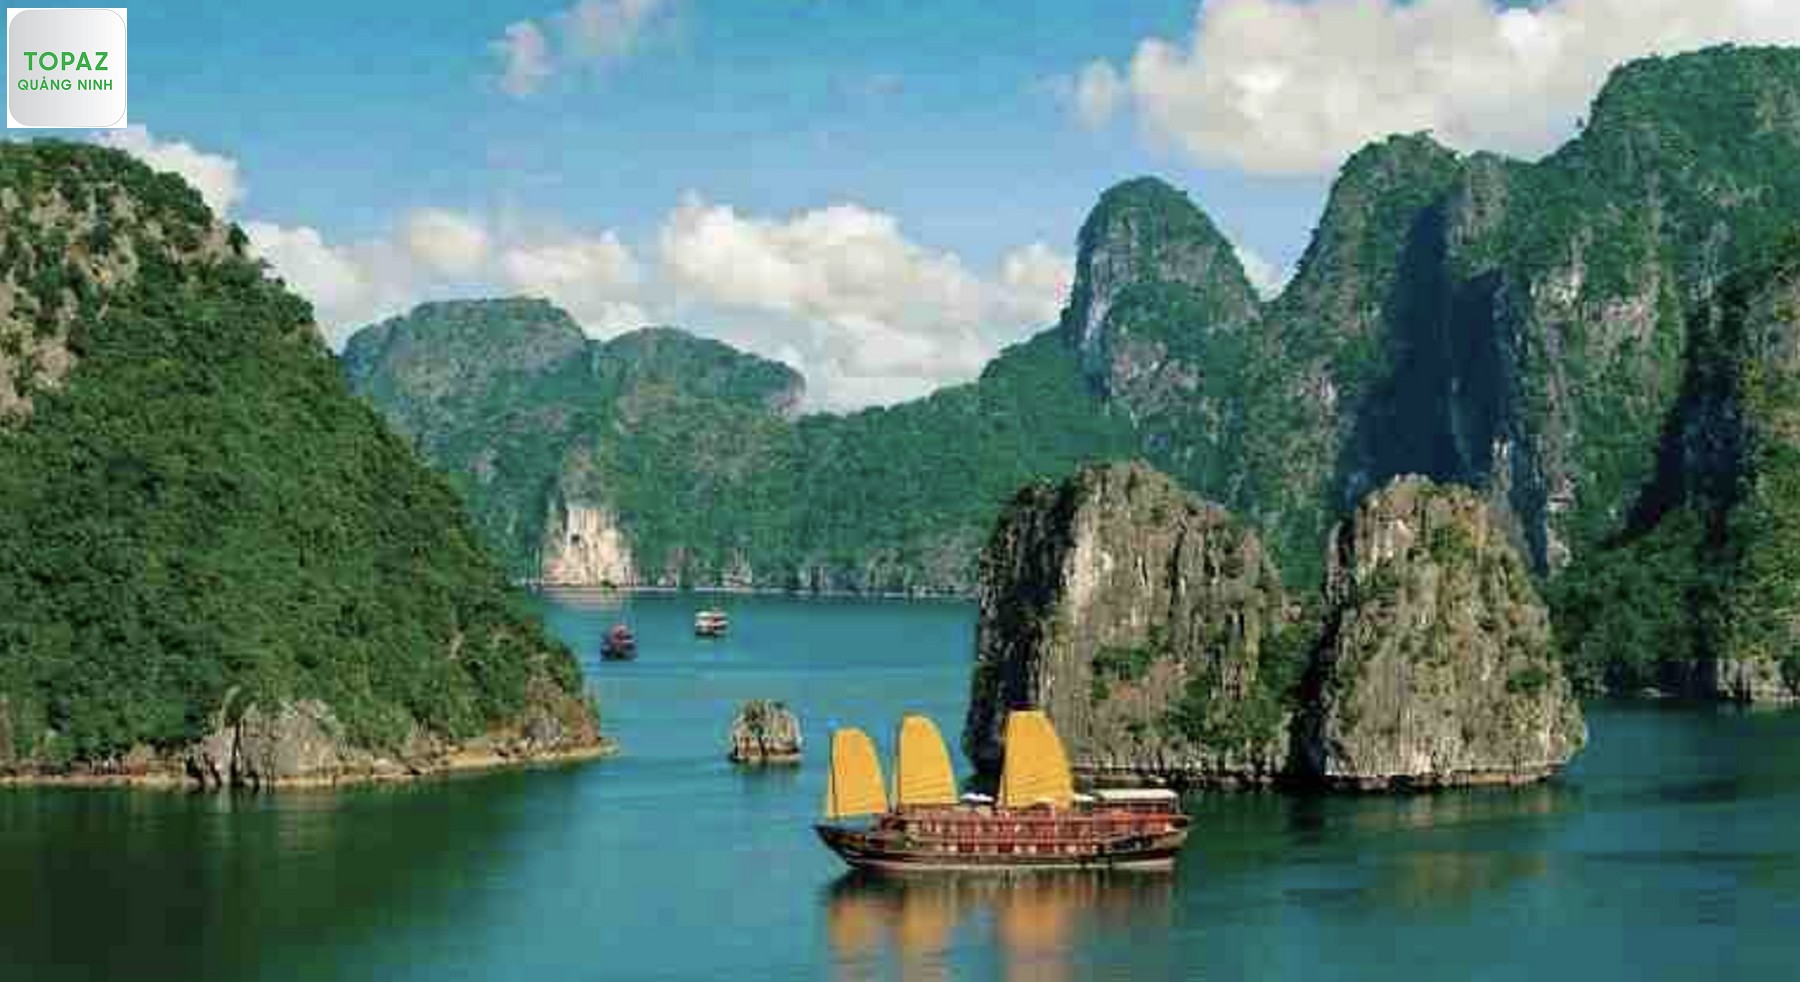  Một số lưu ý về khí hậu Quảng Ninh khi đi du lịch 